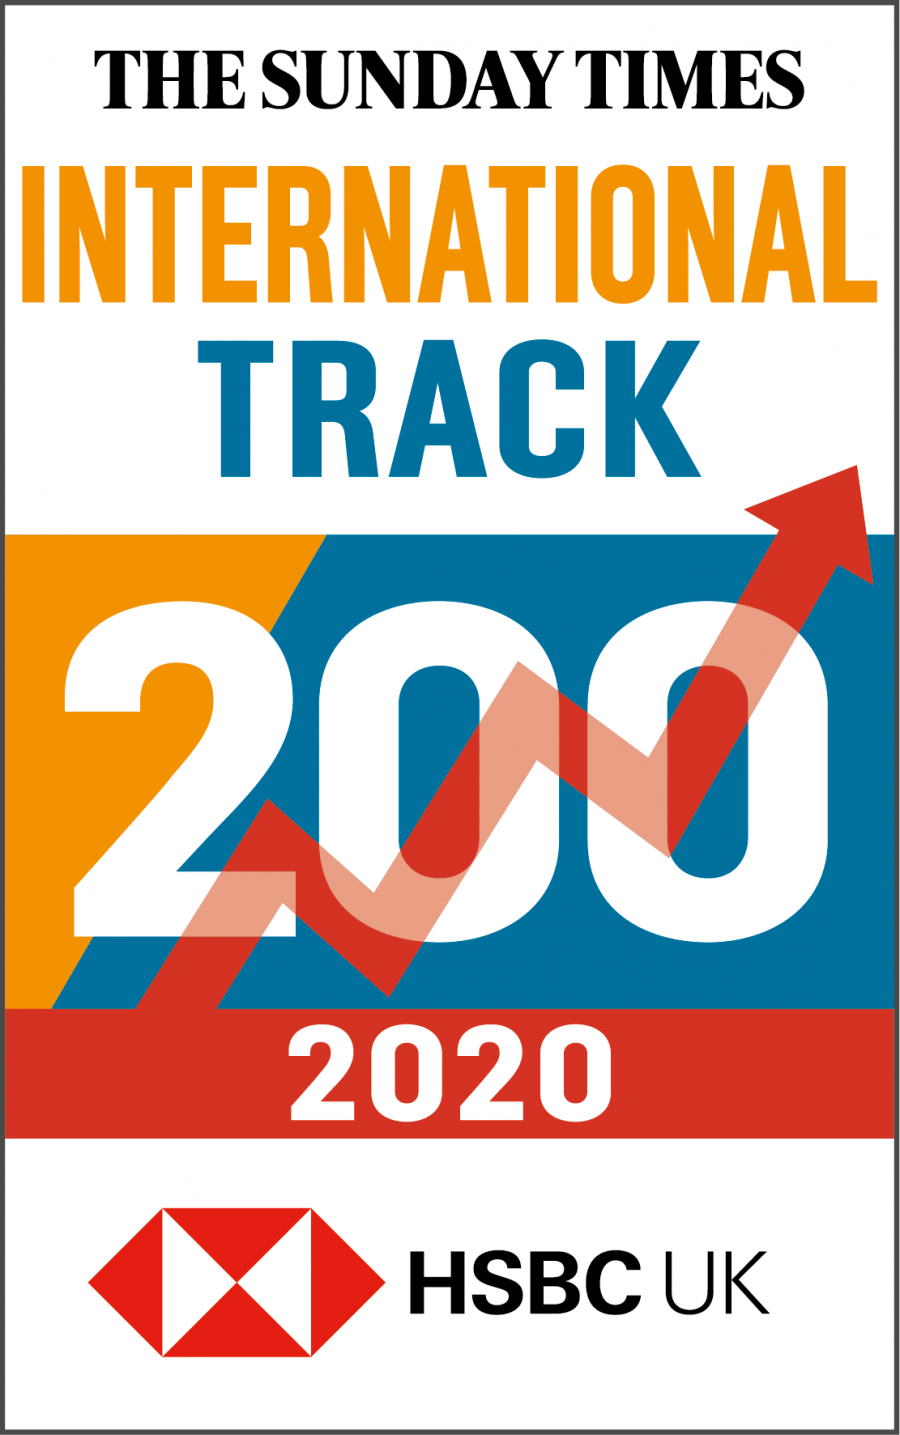 2020-International-Track-200-logo-e1581608381364